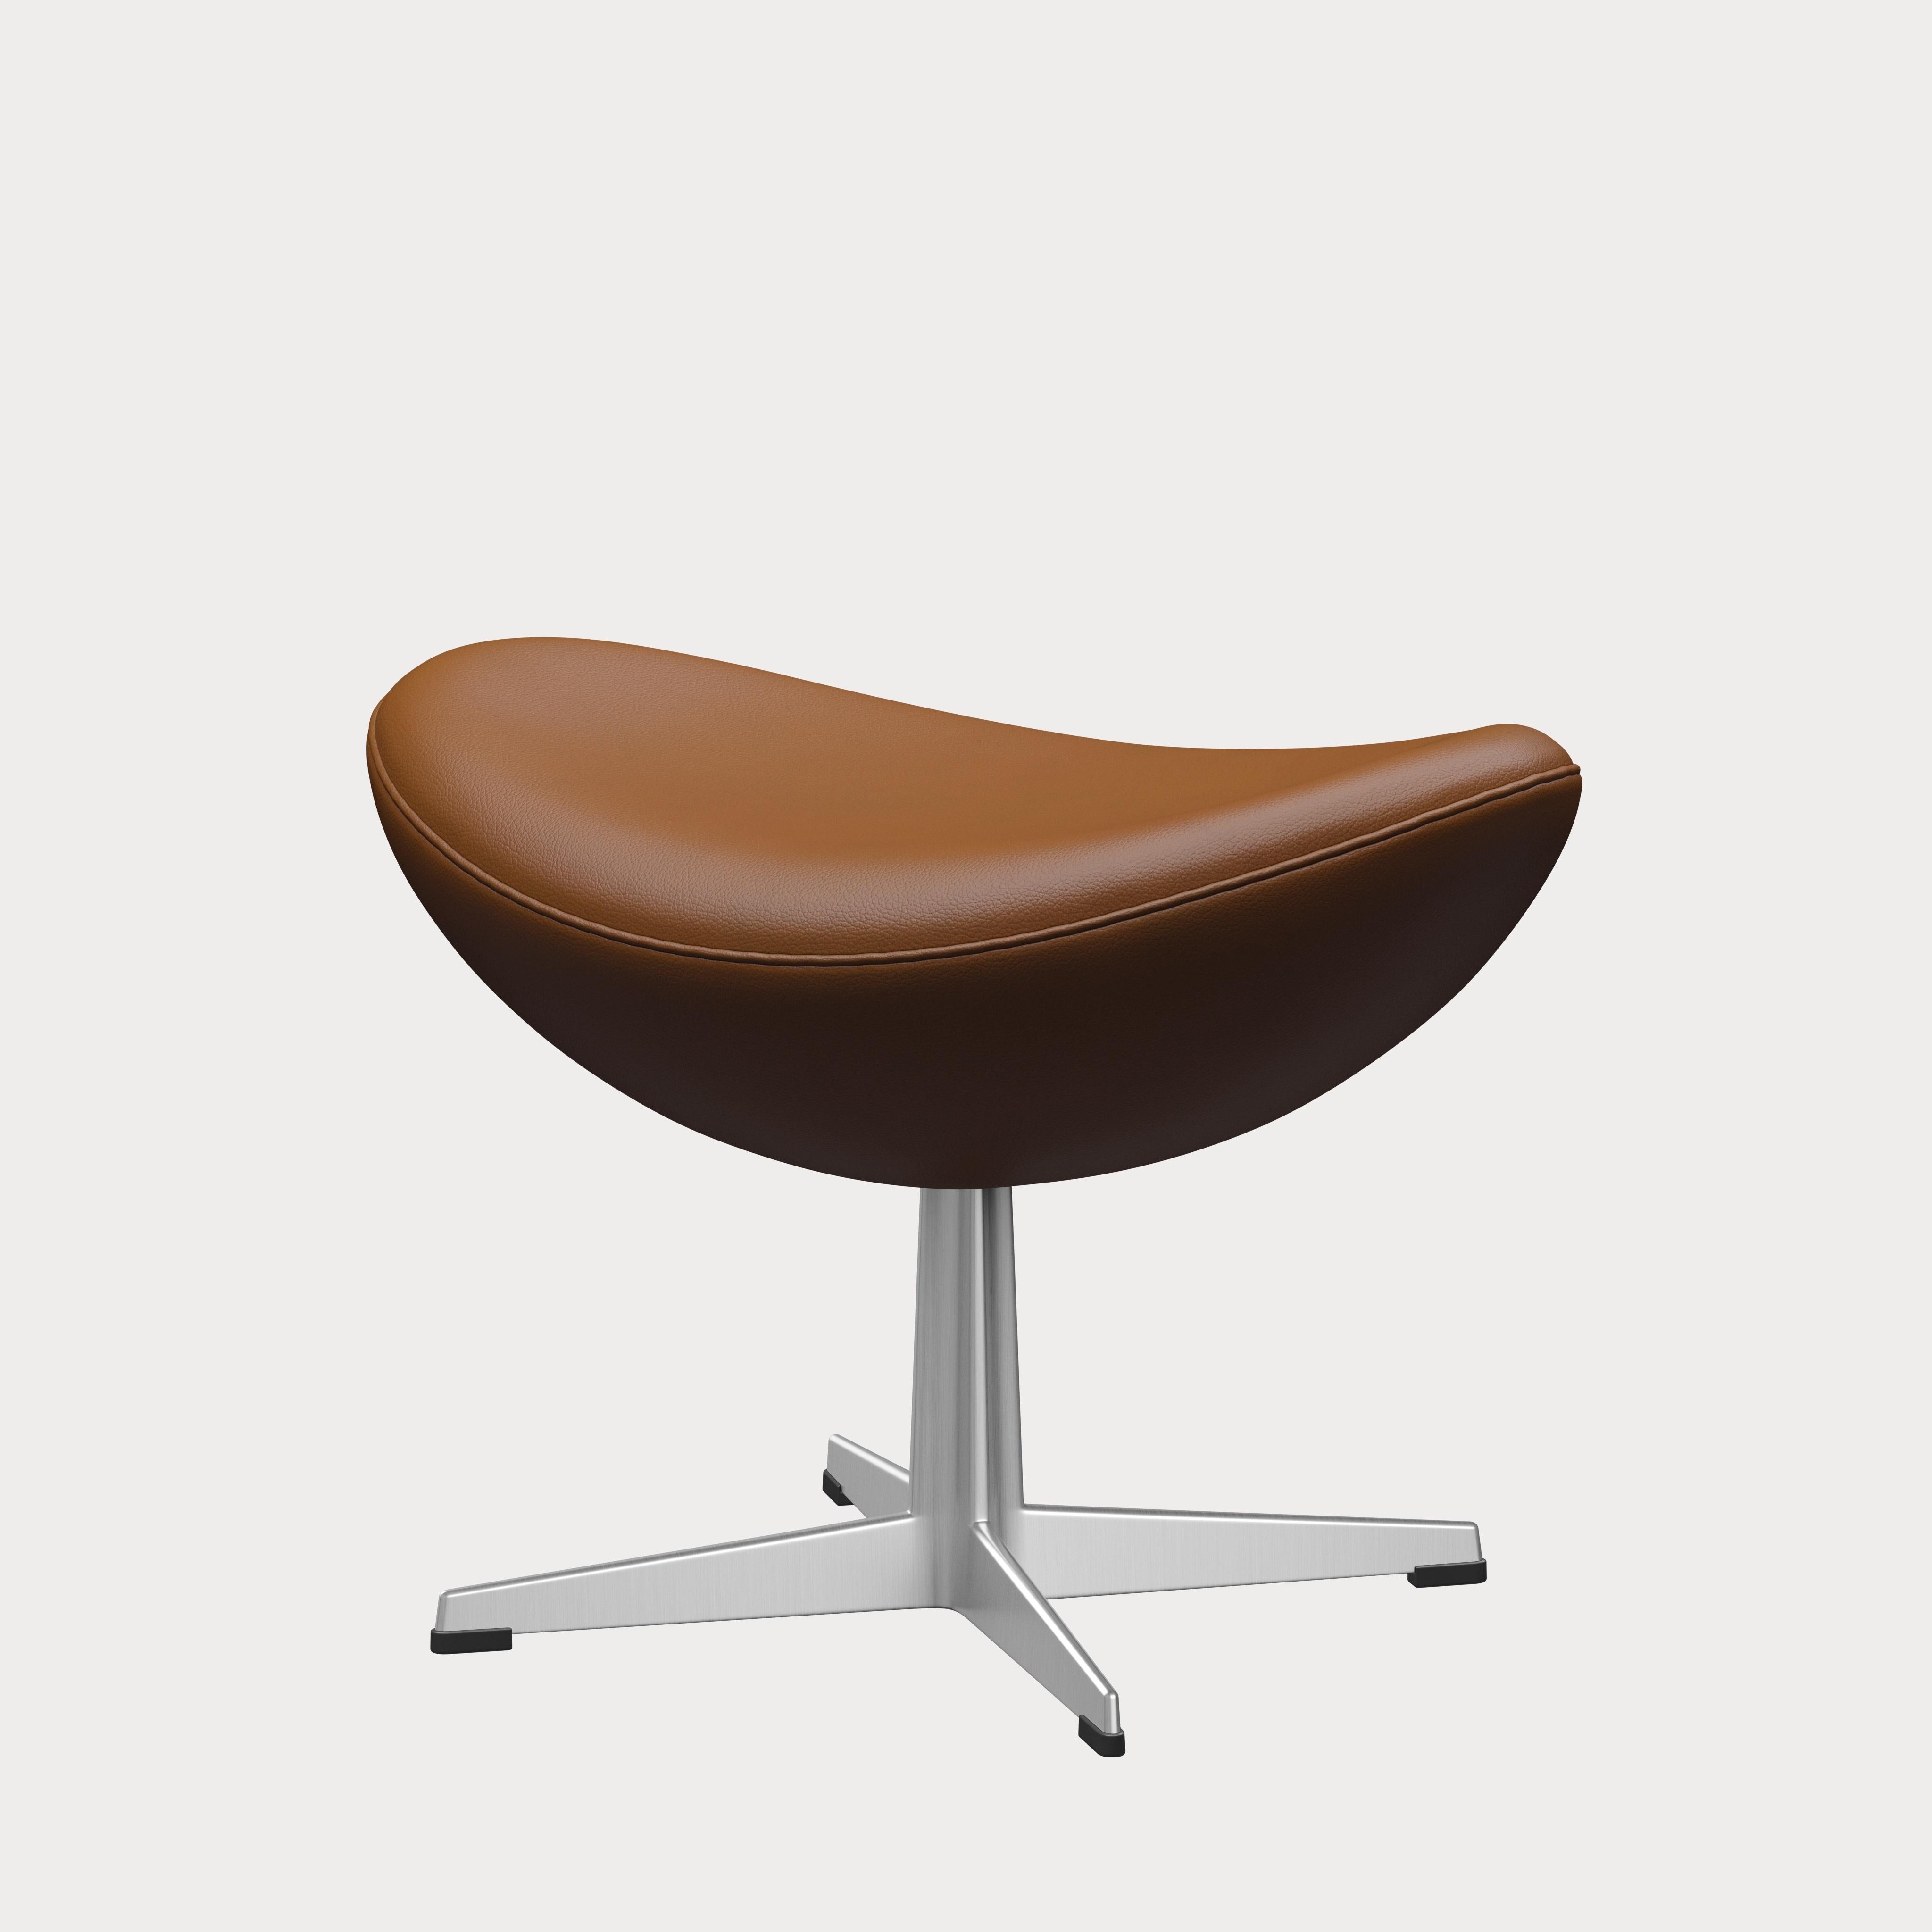 Arne Jacobsen 'Egg' Footstool for Fritz Hansen in Leather Upholstery (Cat. 4) For Sale 4